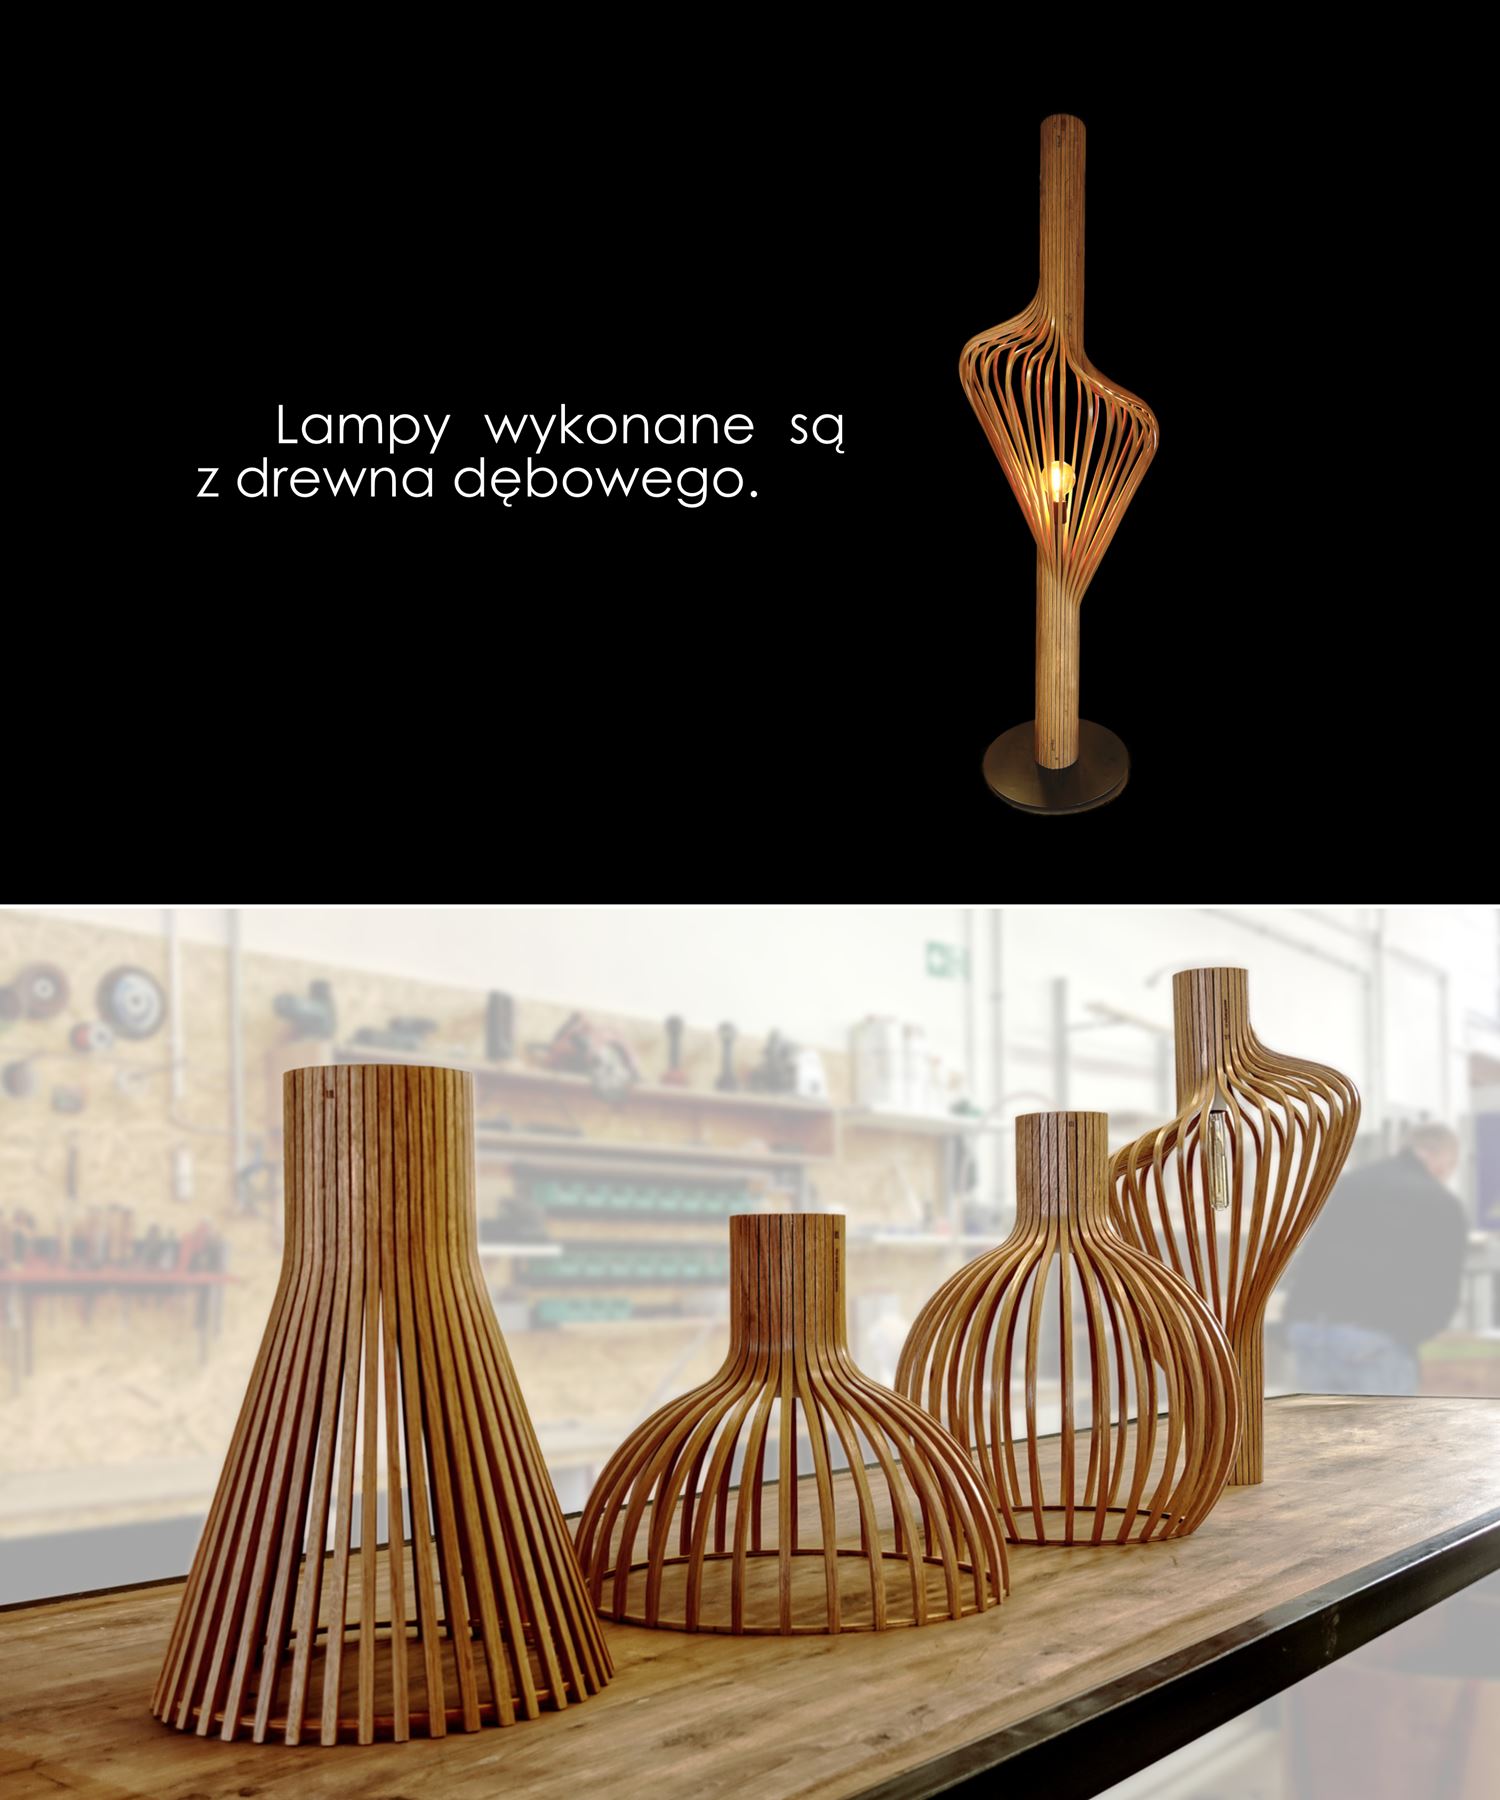 Lampy wykonane są z drewna dębowego.